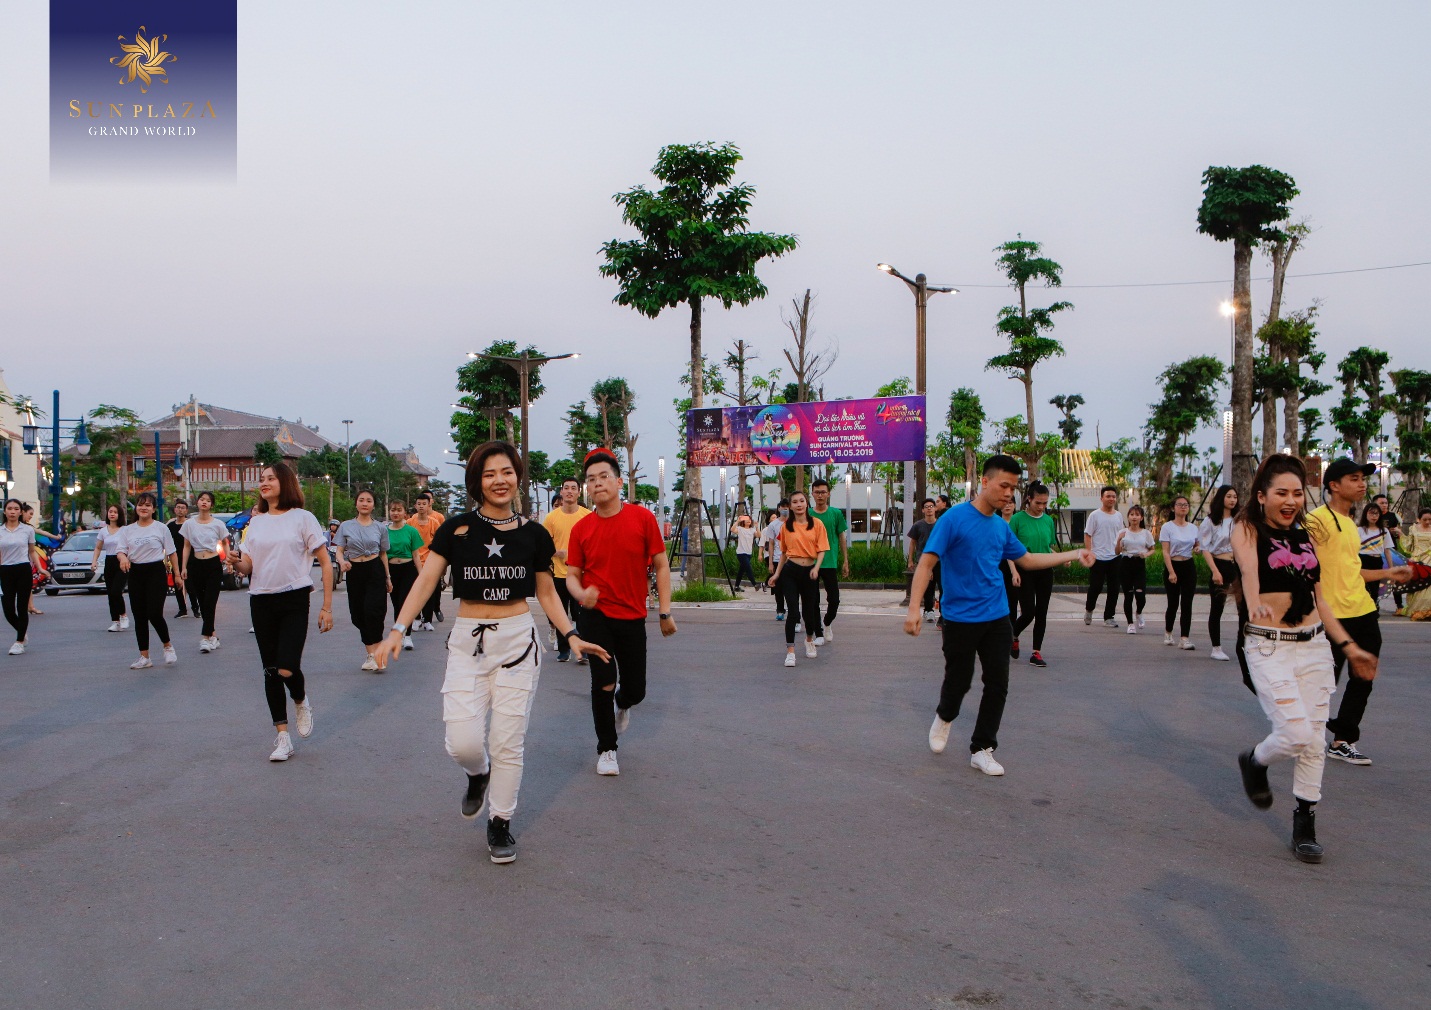 Quy tụ hơn 100 dancers trong các tiết mục nhảy flashmob quanh khu vực Sun World Halong Complex và Sun Plaza Grand World.